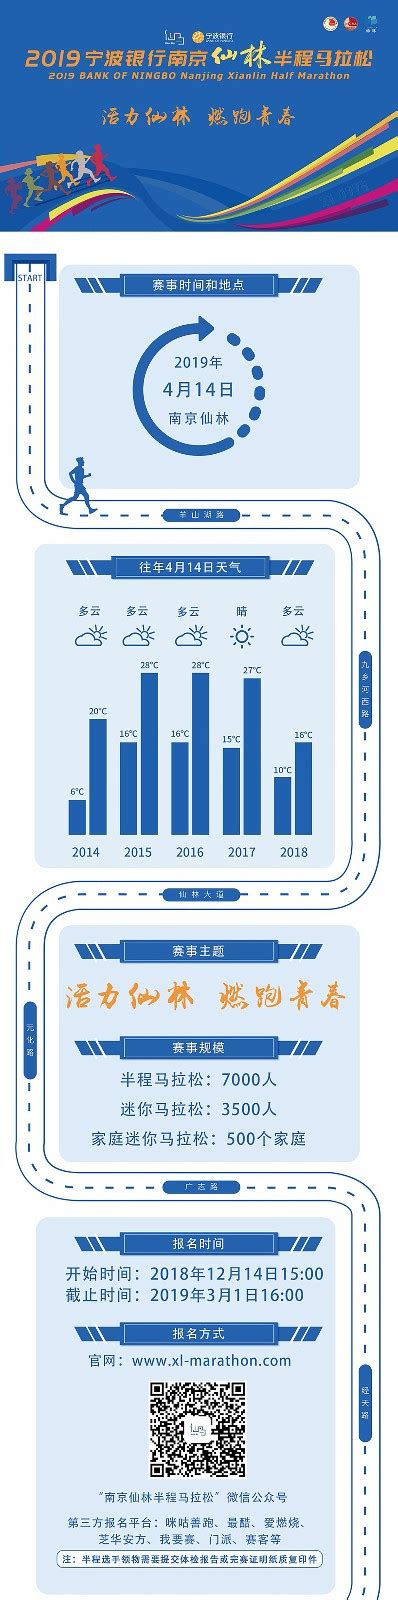 2019宁波银行南京仙林半程马拉松官方网站-比赛公告详情